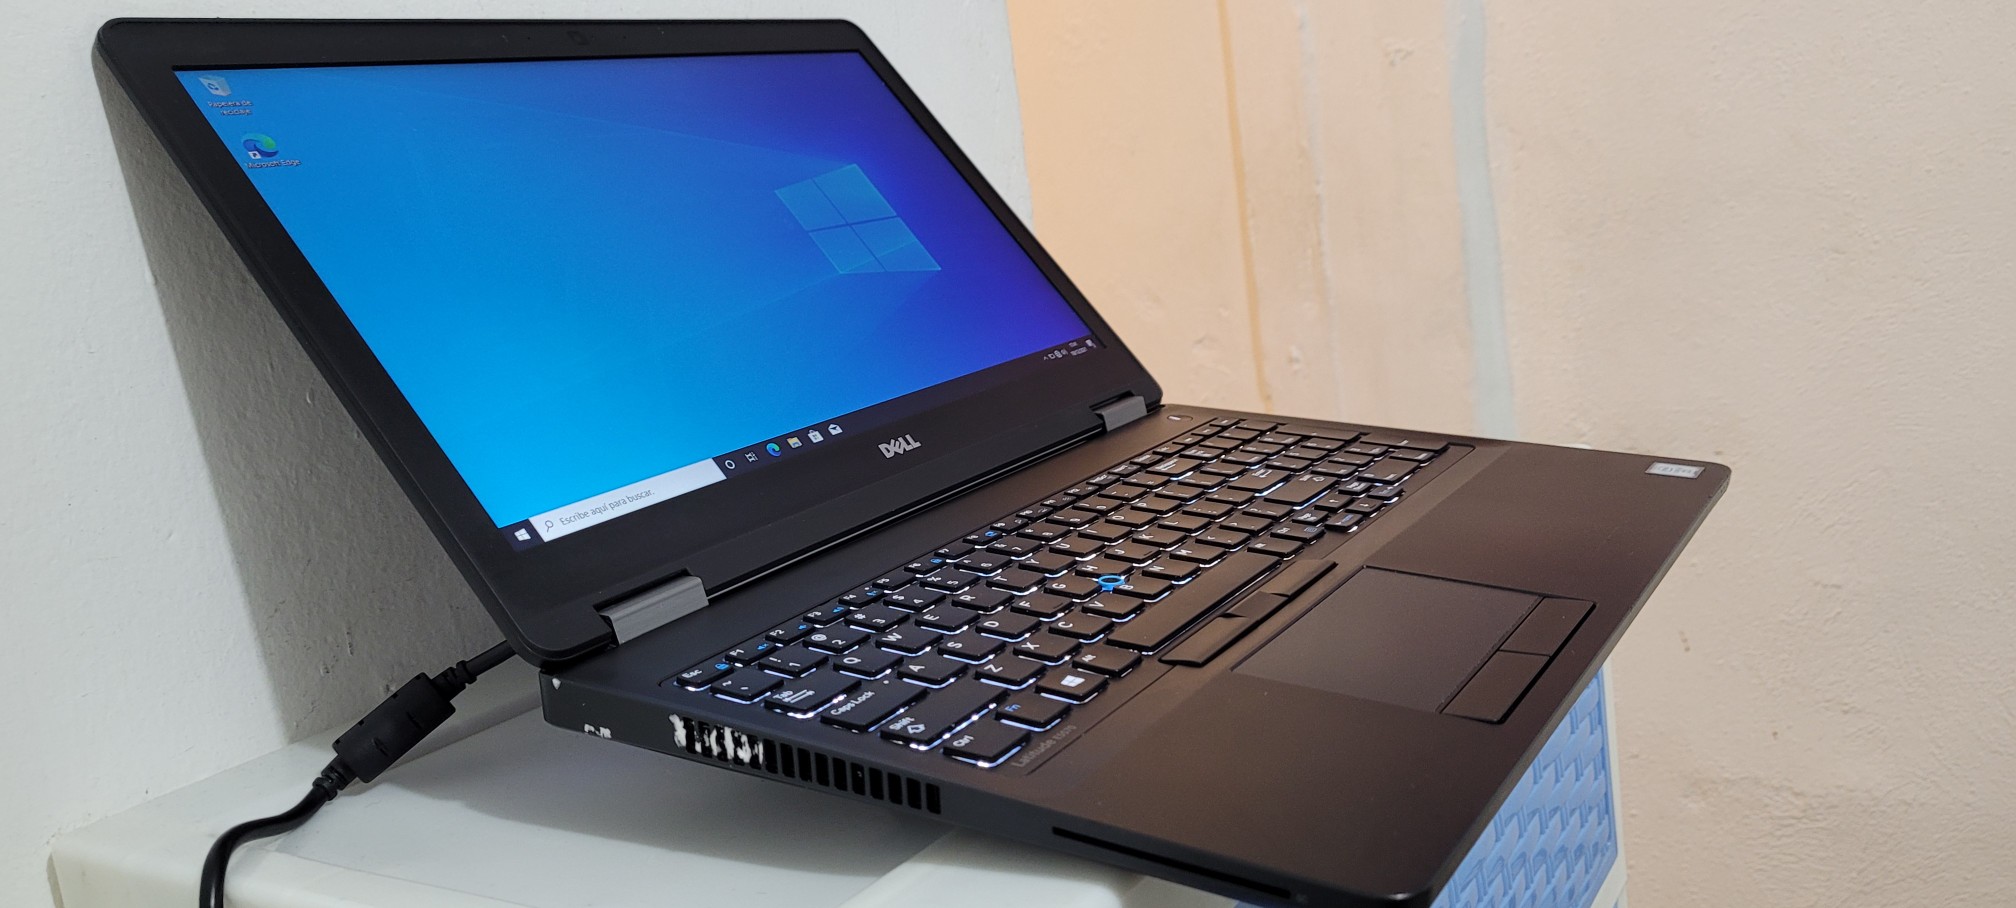 computadoras y laptops - Dell 5570 17 Pulg Core i5 6ta Ram 8gb Ddr4 Disco 128gb Y 1000gb Full 1